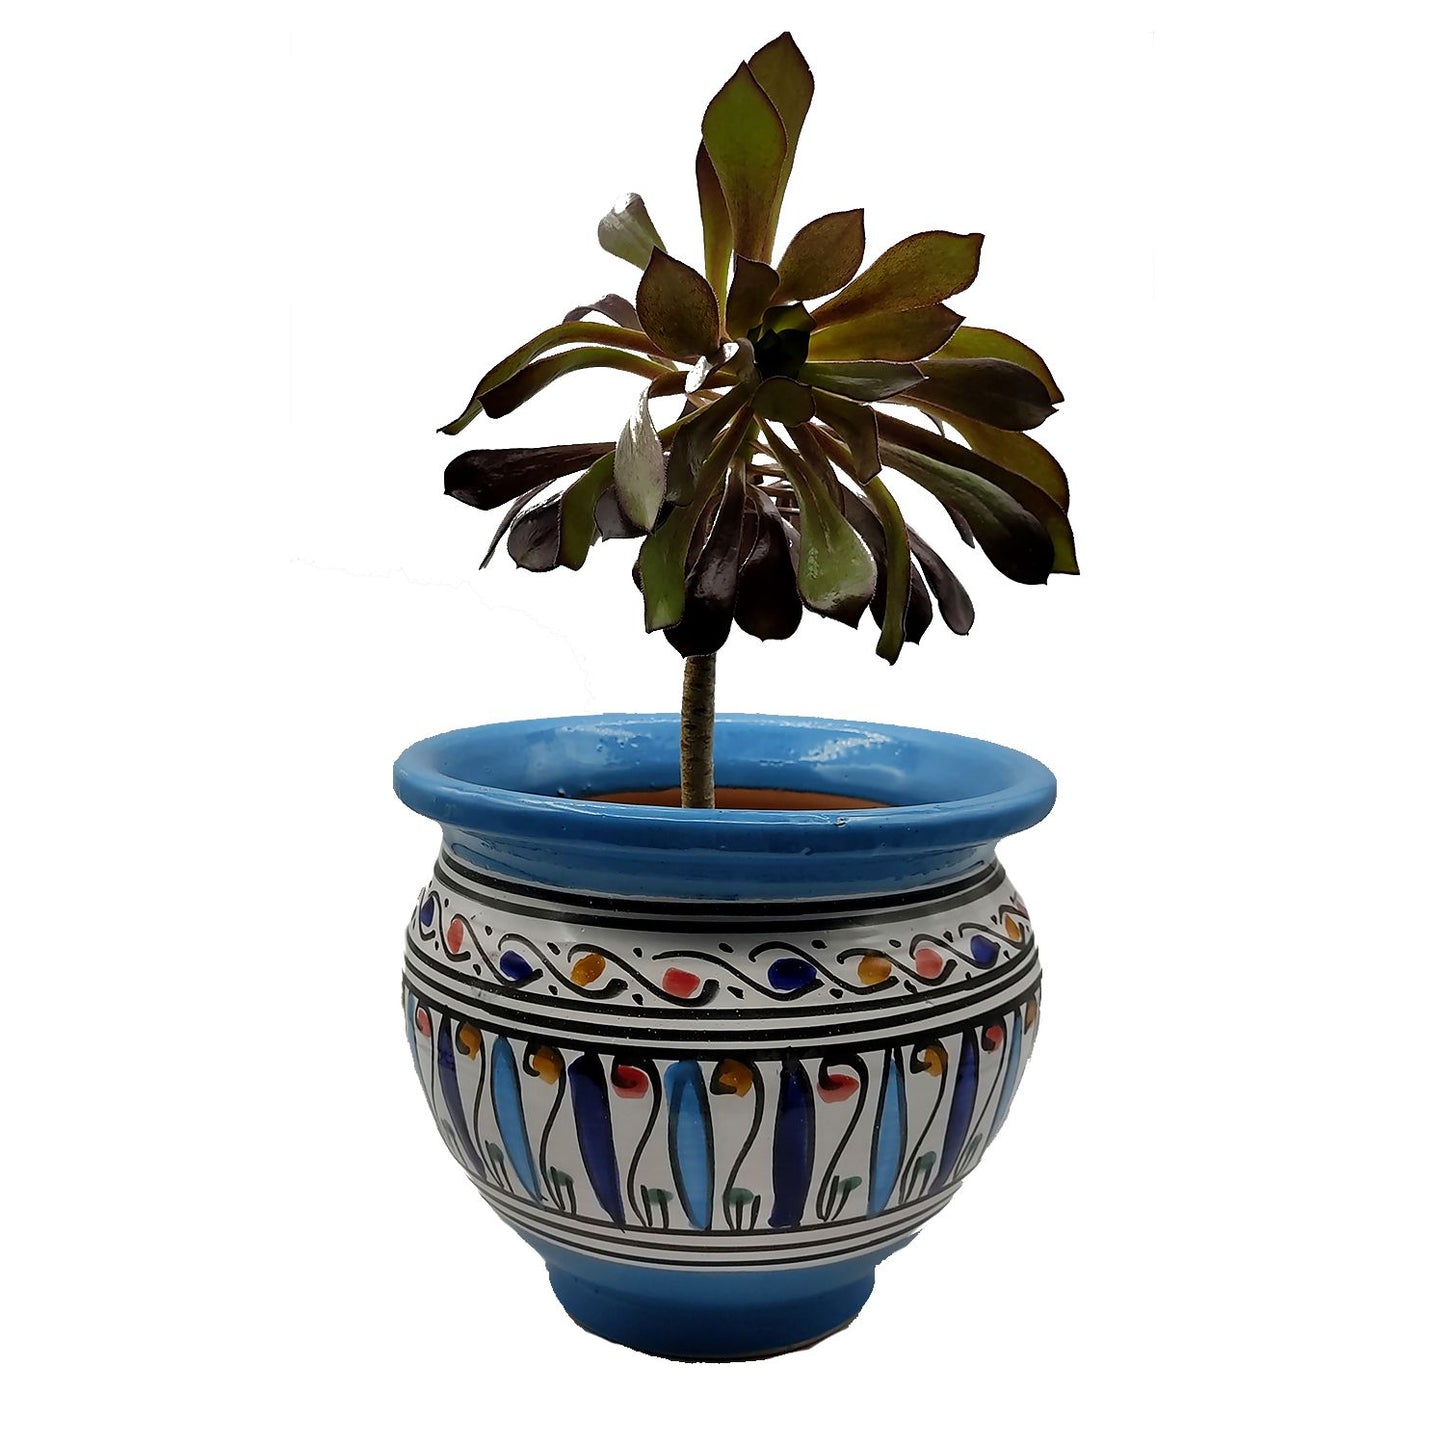 Vaso Cachepot Berbero Etnico Tunisno Marocchino Ceramica Terracotta Orientale 0411221003